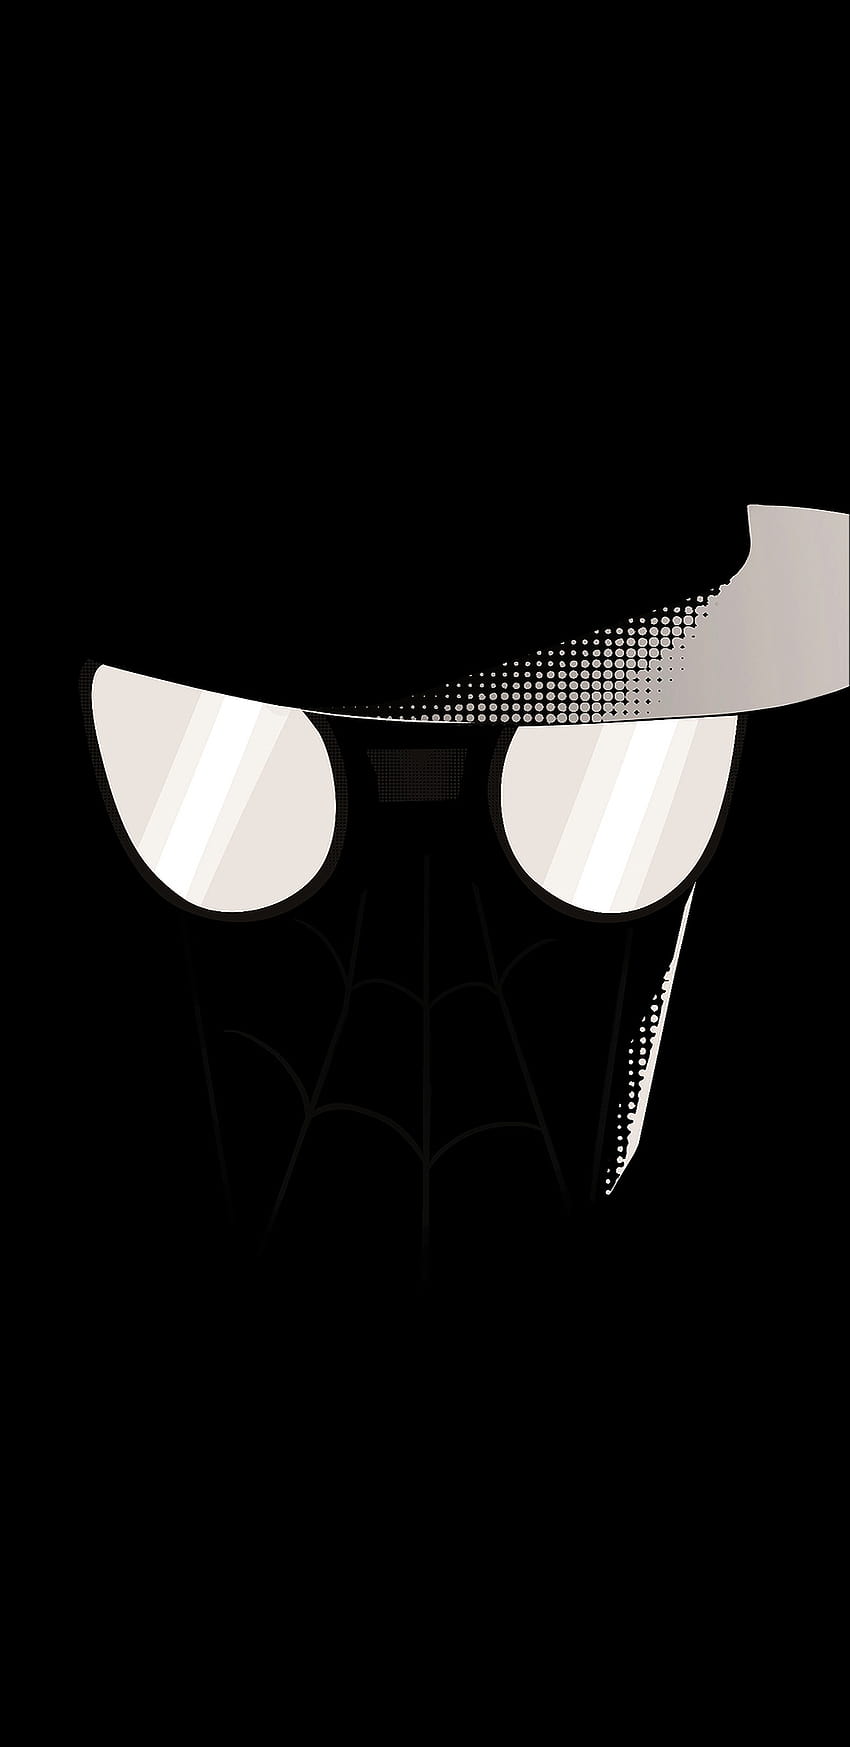 Spider man noir phone HD phone wallpaper | Pxfuel